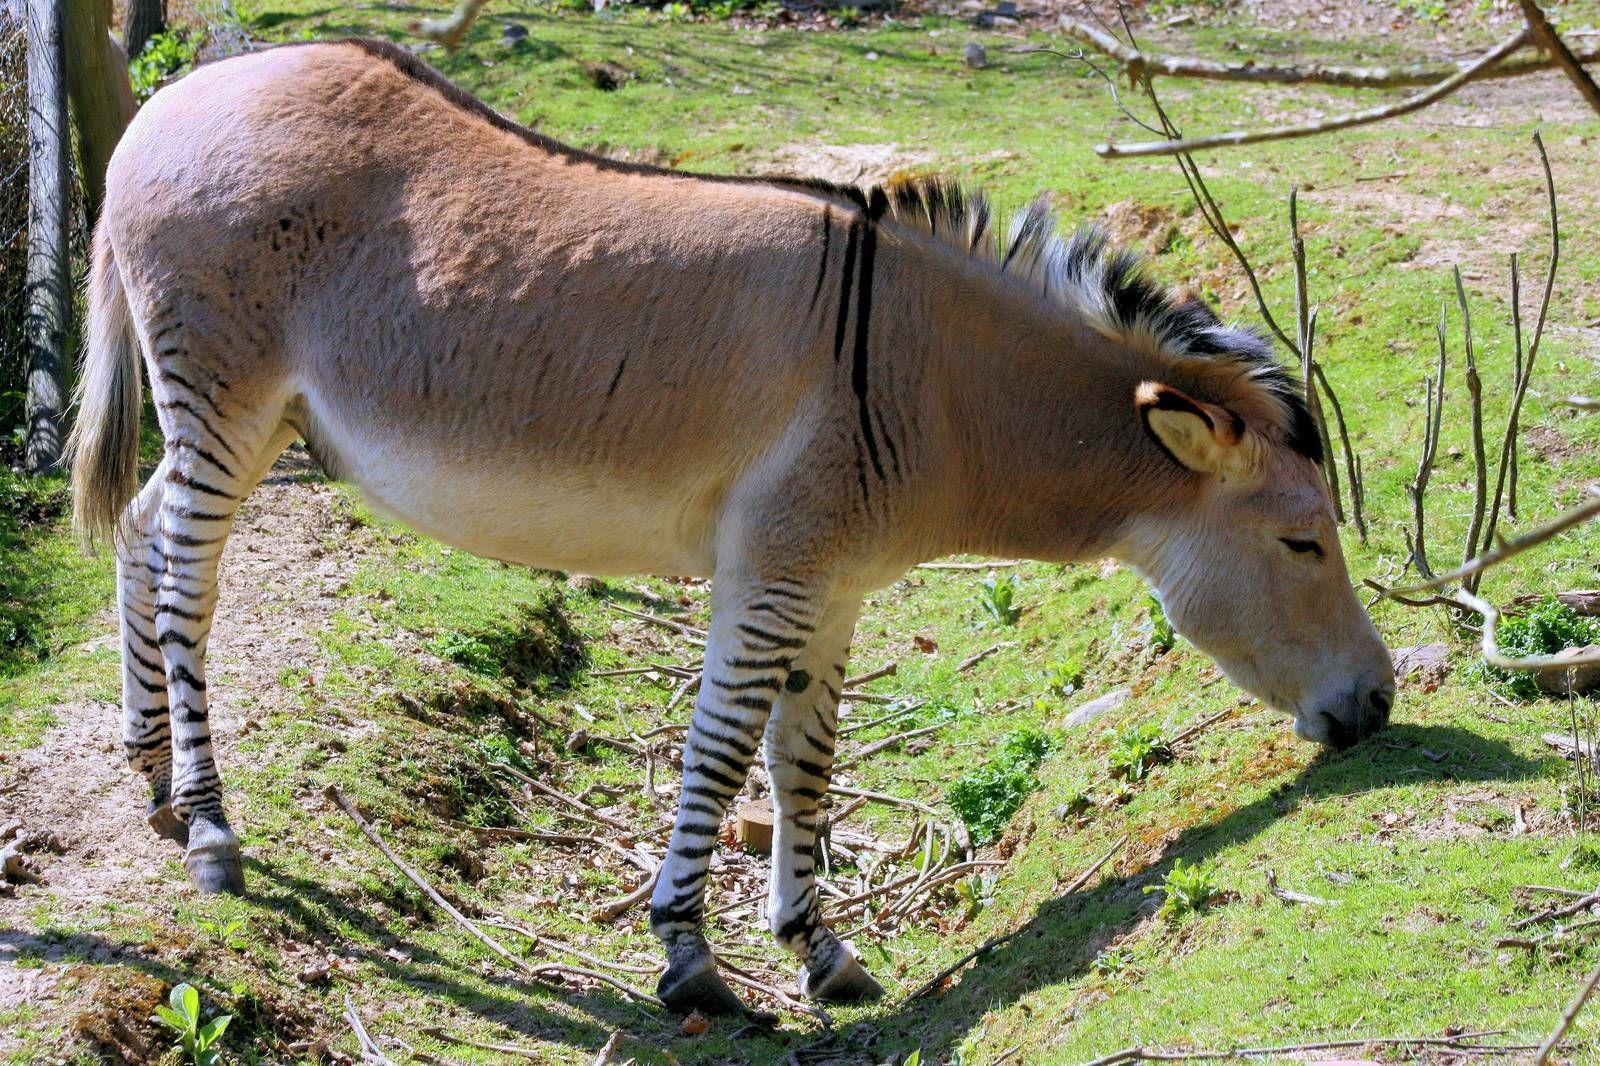 Zebra x oslí hybridní; Groombridge Place; 6.4.2012. Zonky, Zorse